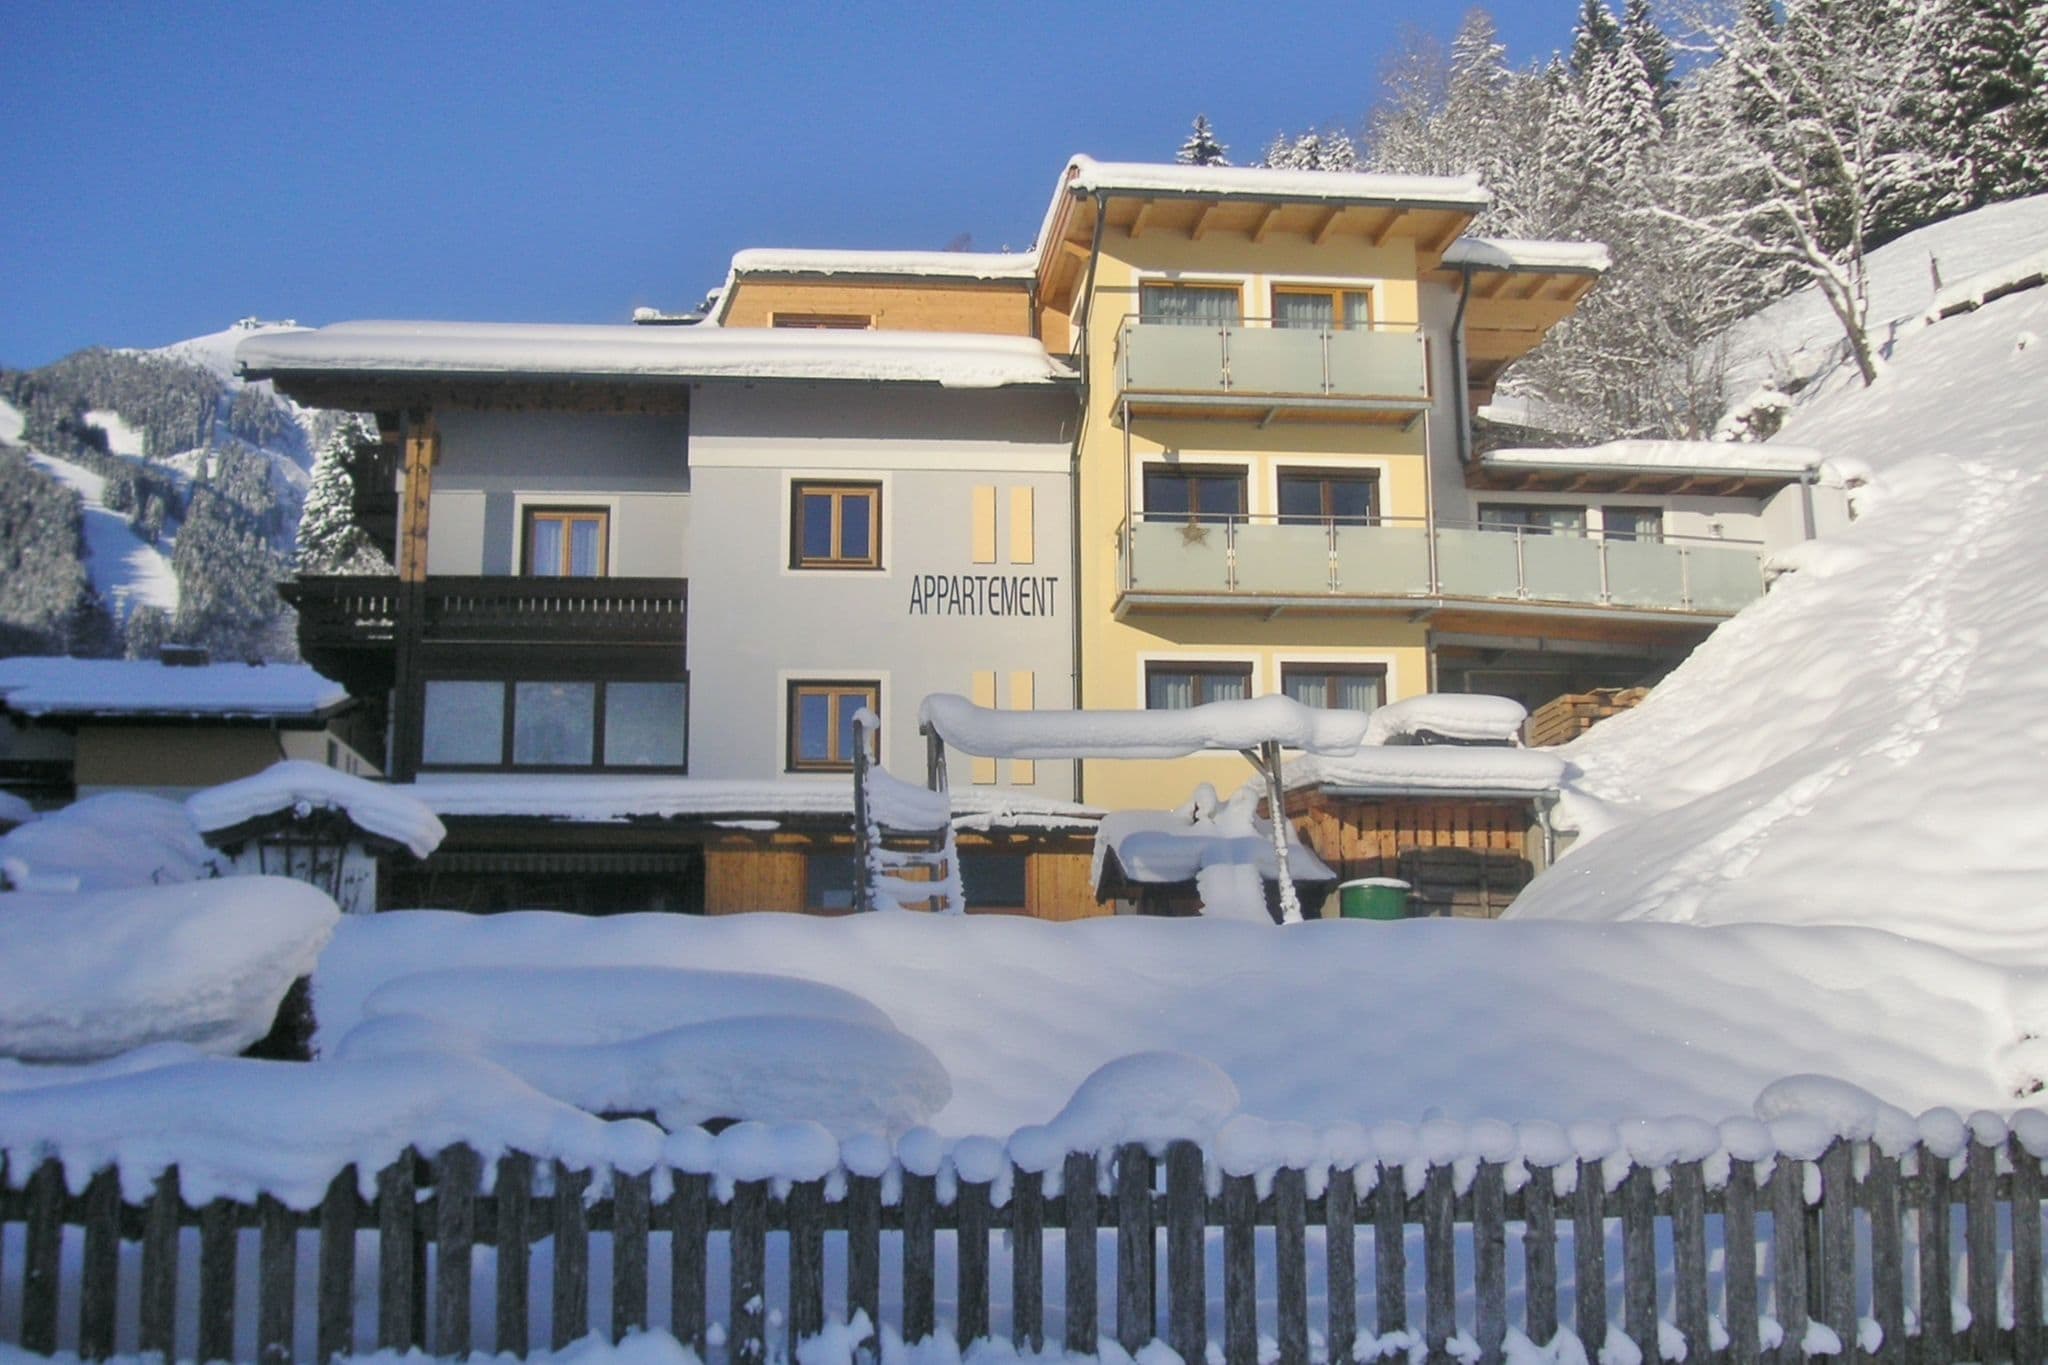 Appartement in der Nähe des Skigebietes